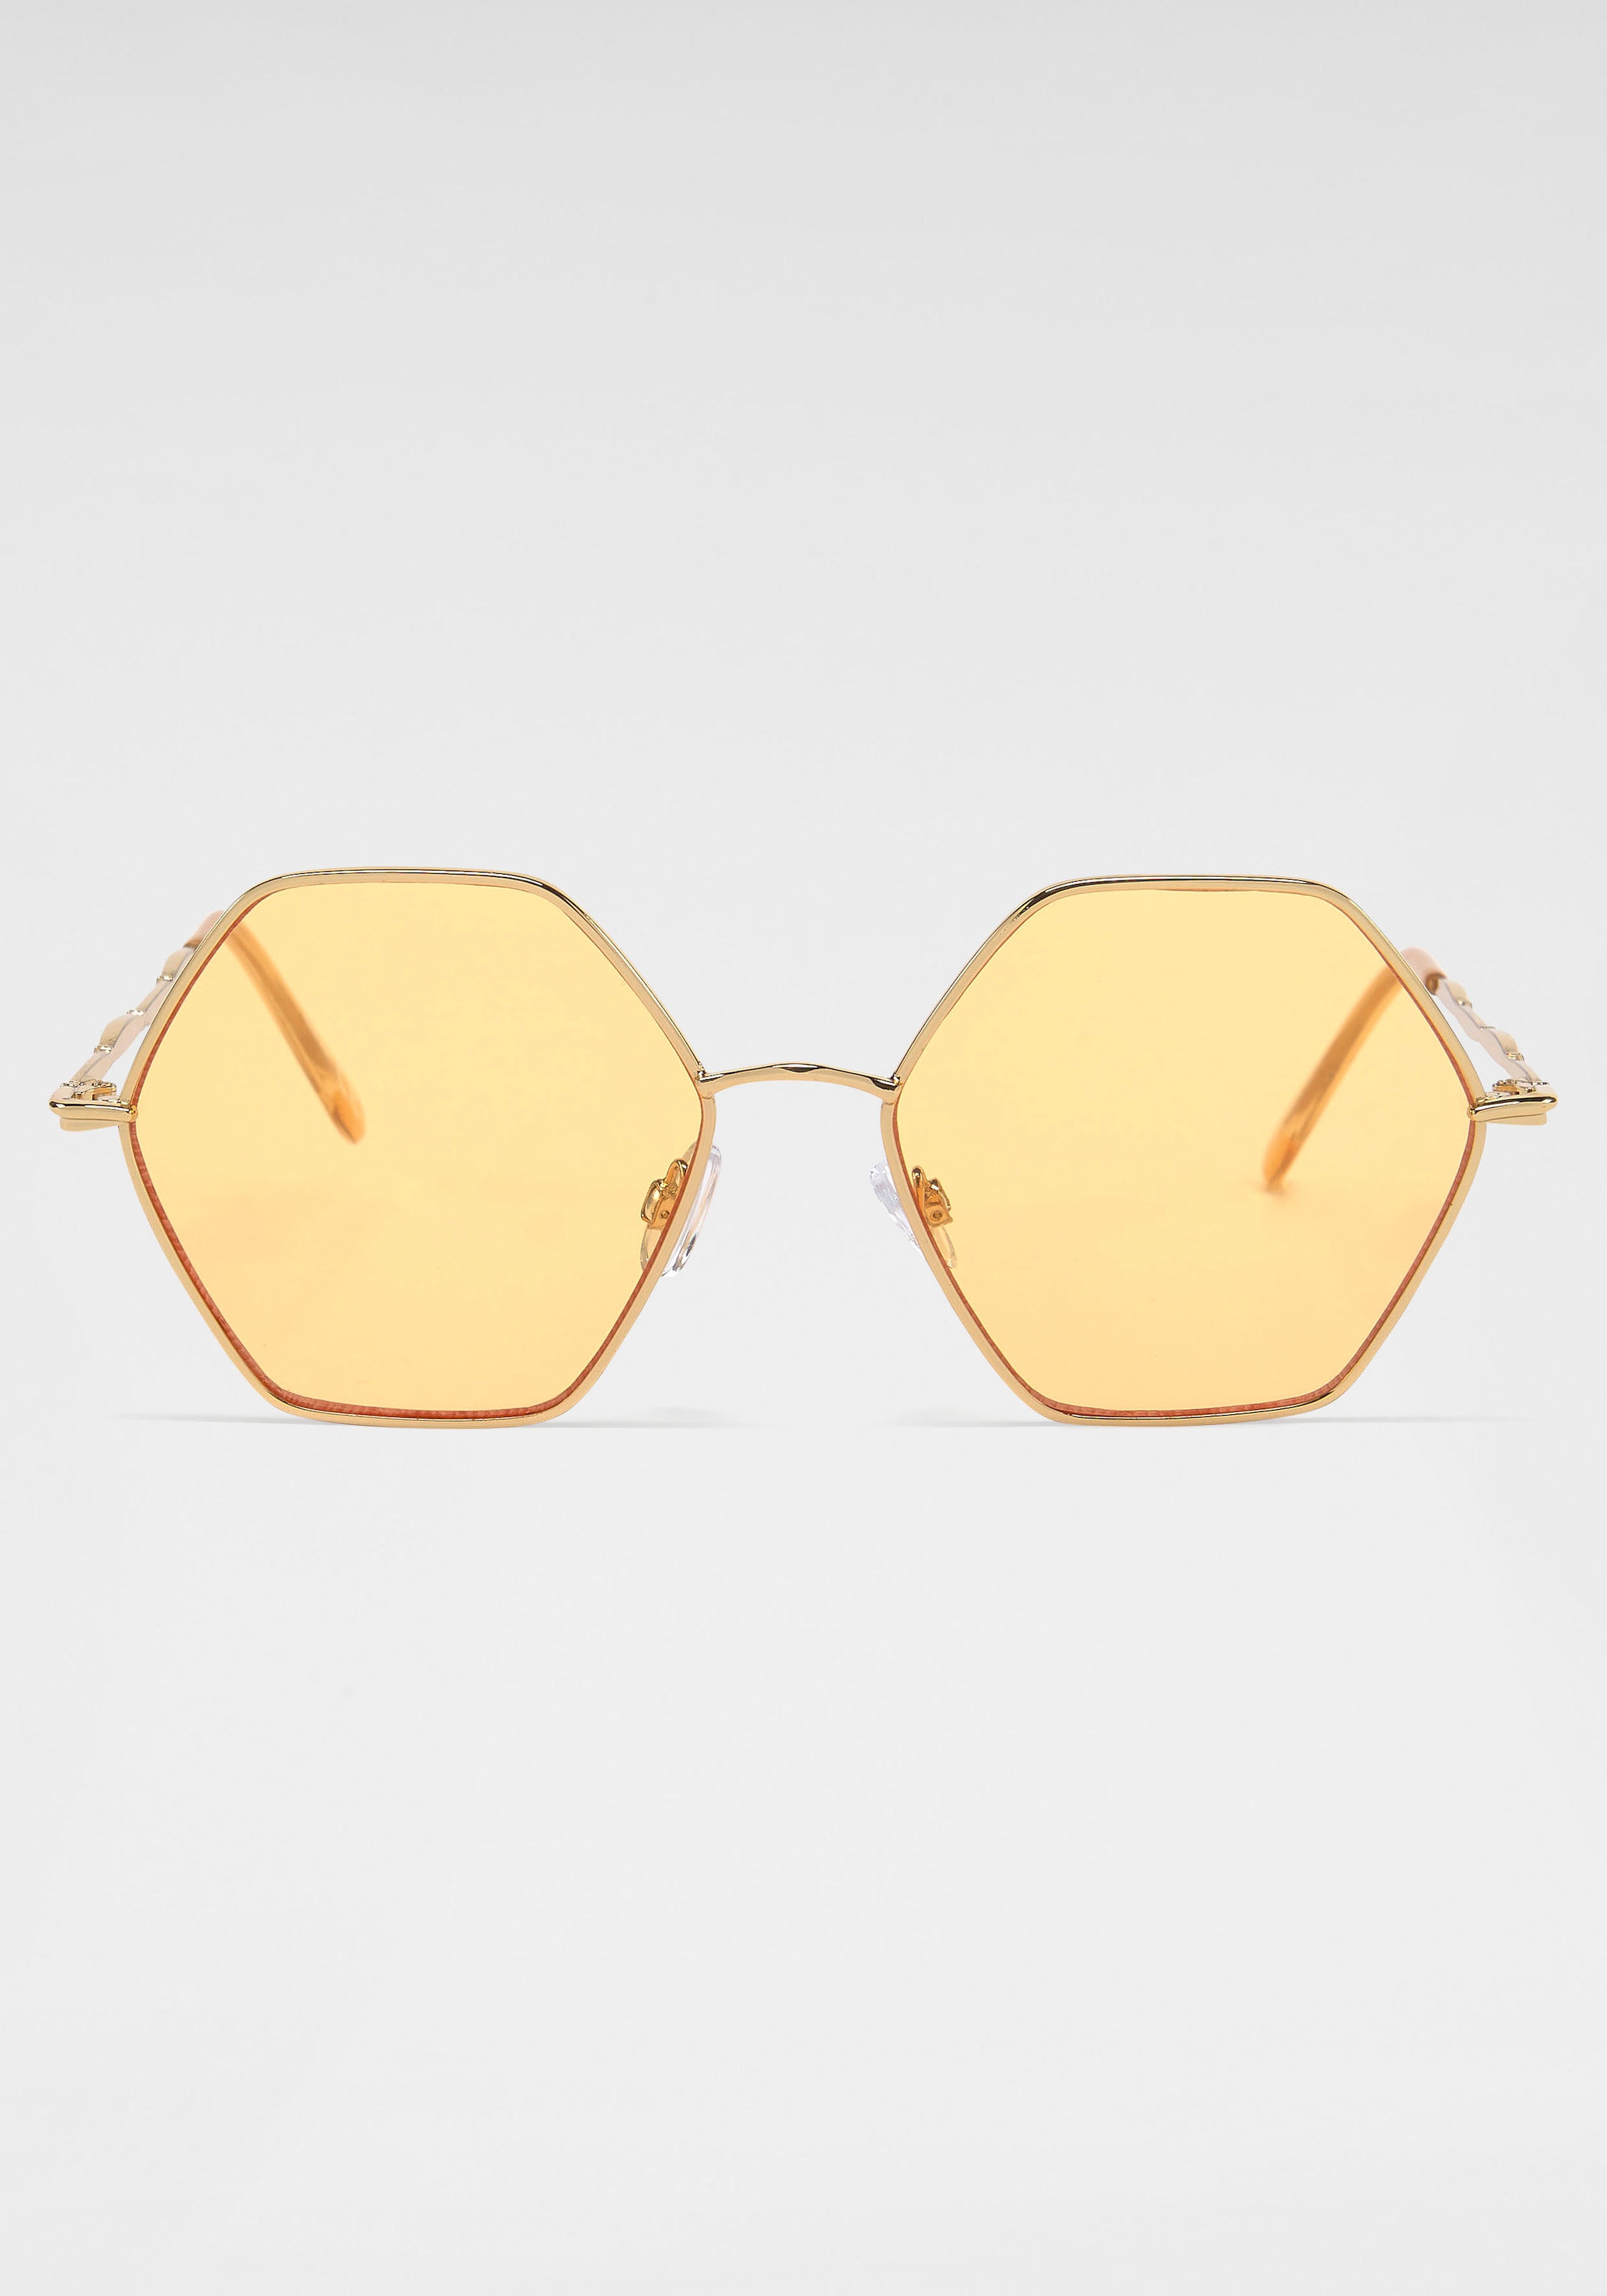 [Sofortige Lieferung und toller Preis] YOUNG SPIRIT LONDON Eyewear Sonnenbrille kaufen online